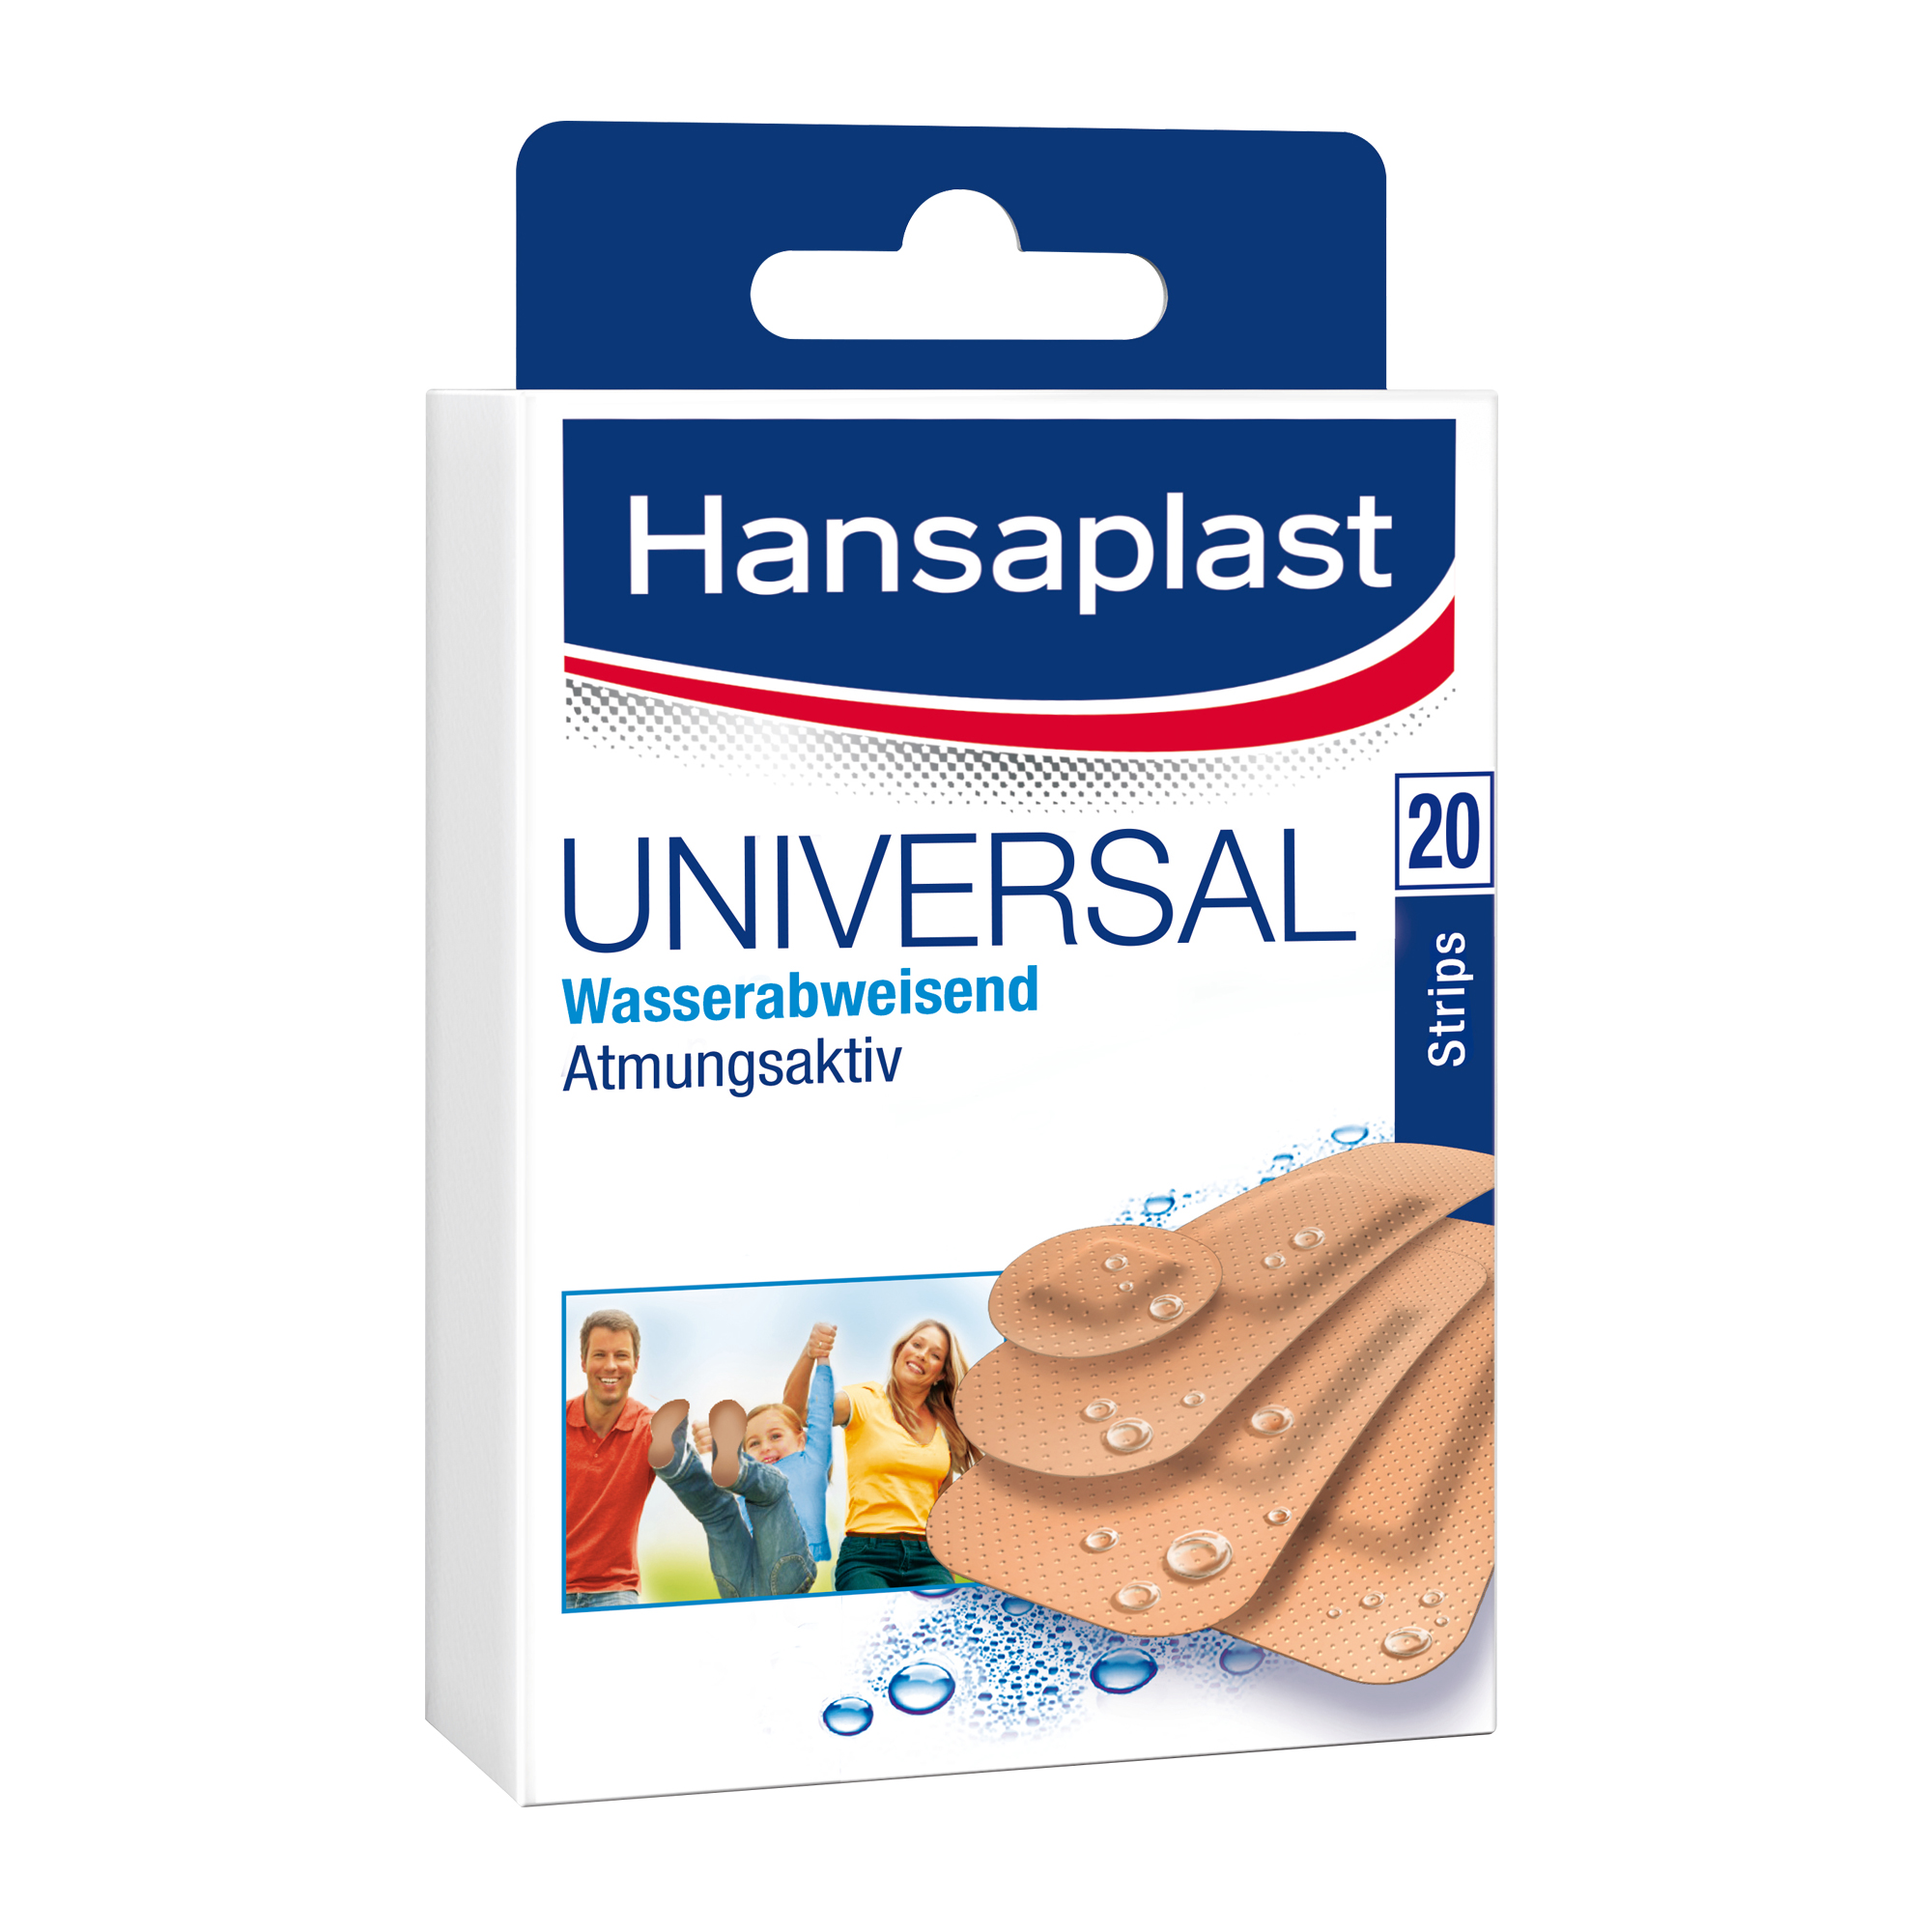 Hansaplast Universal wasserfeste Strips in 4 Größen für Bagatellverletzungen.